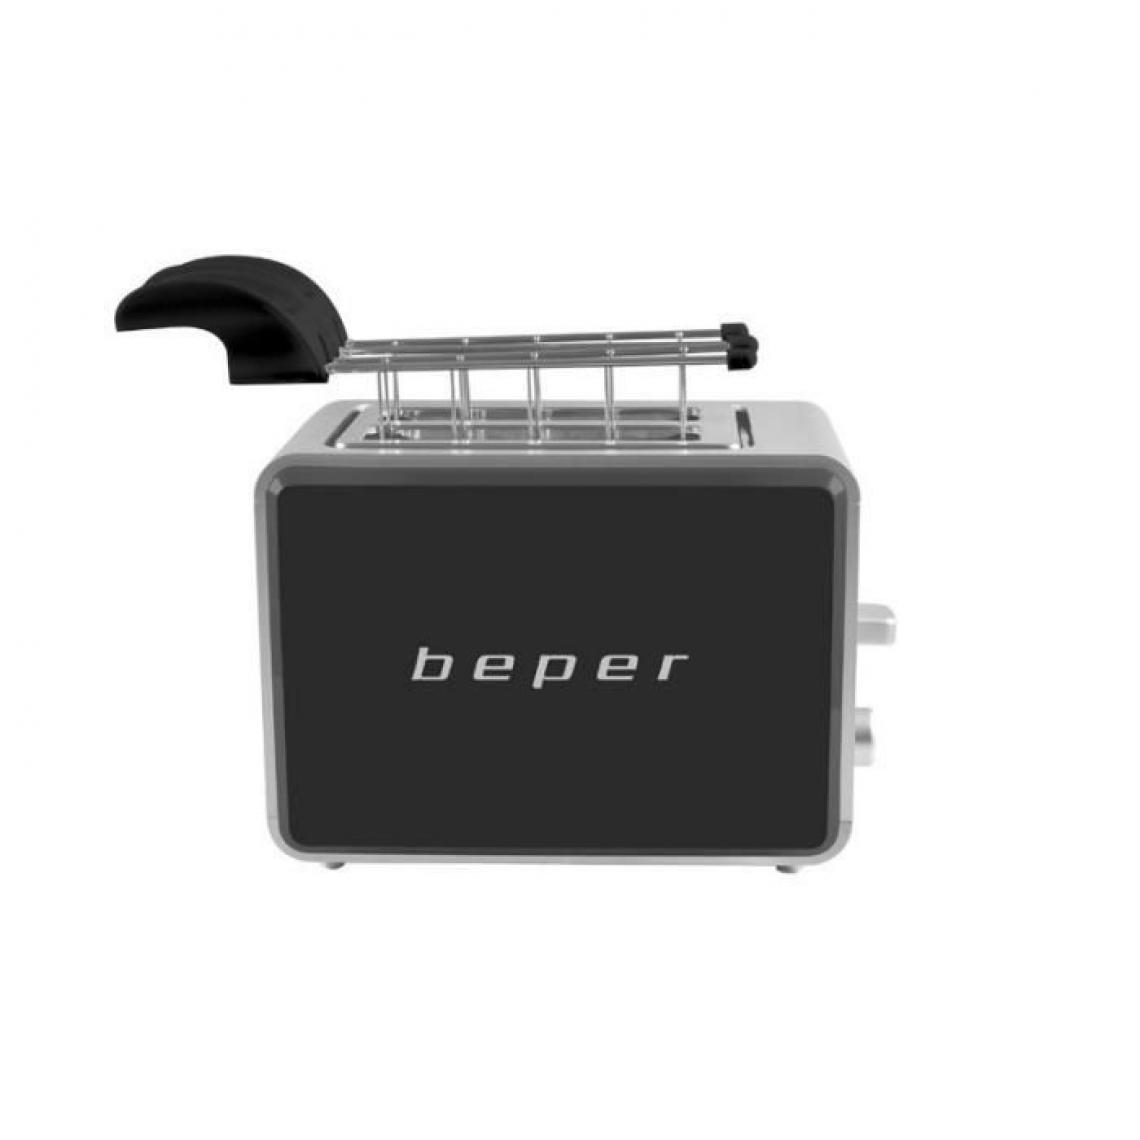 Beper - BEPER BT.001N Grille-pain 2 fentes - 750 W - Noir - Grille-pain